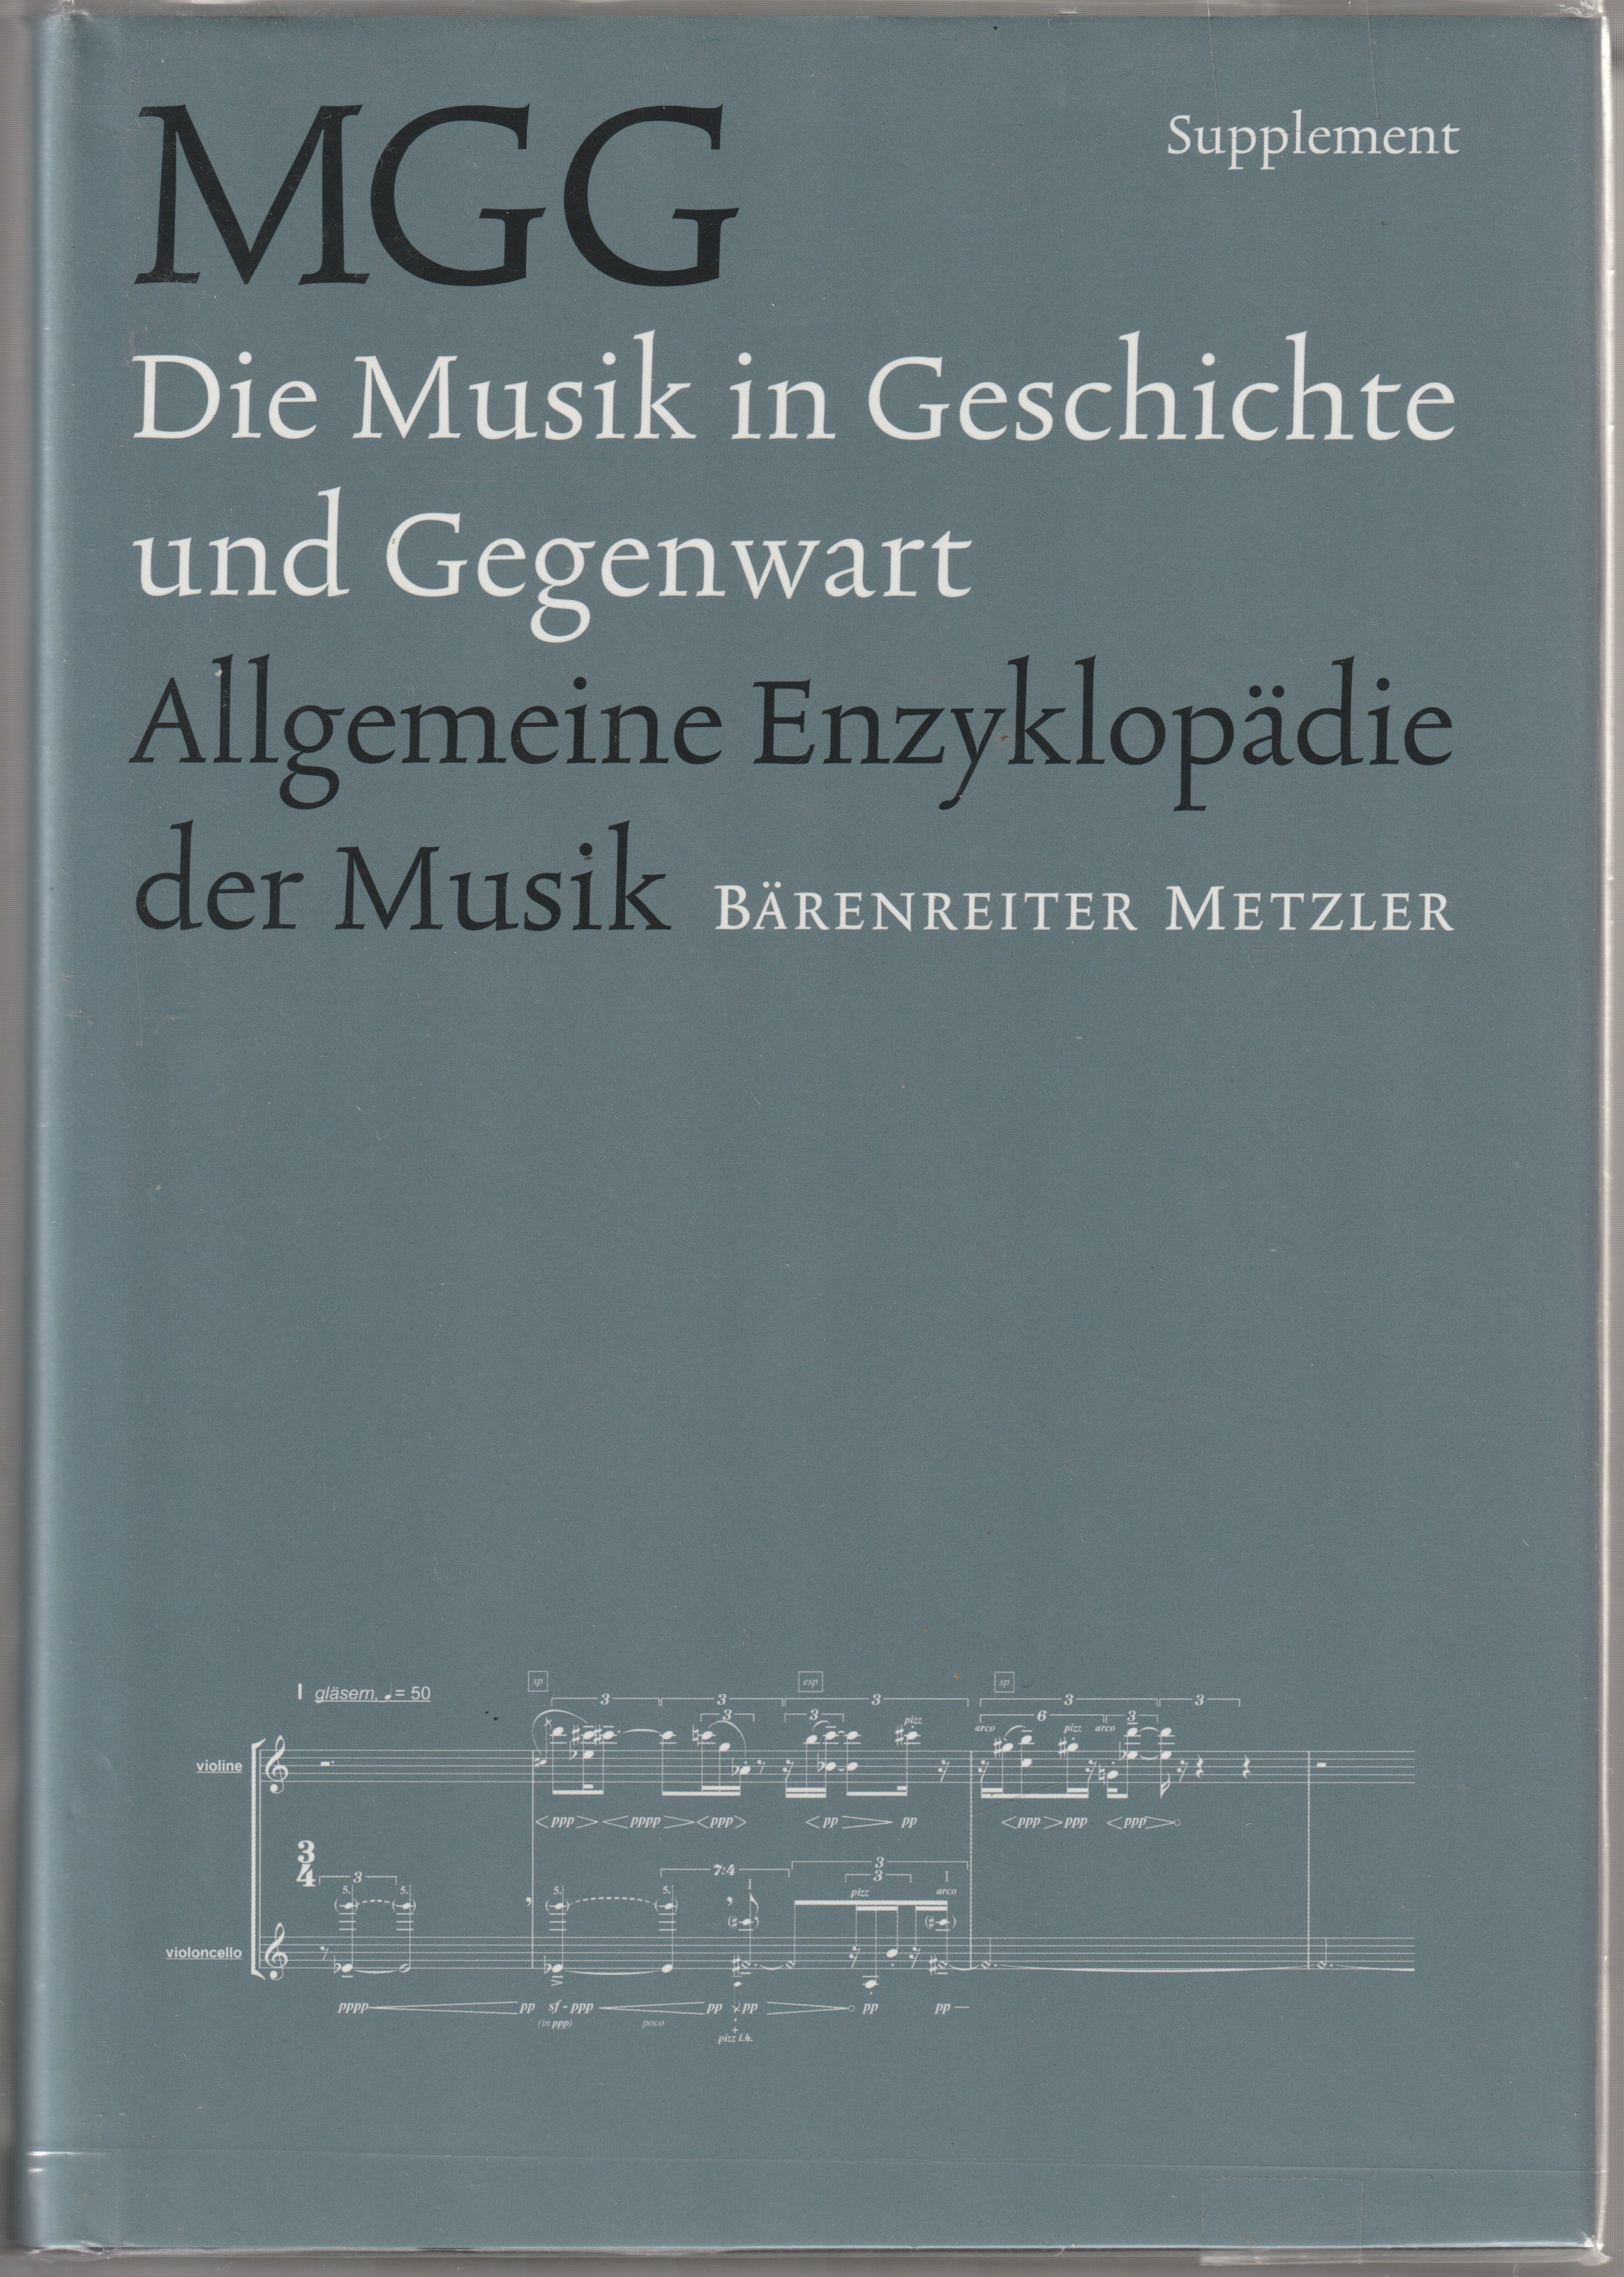 Die Musik in Geschichte und Gegenwart : allgemeine Enzyklopadie der Musik. [Personenteil] Supplement